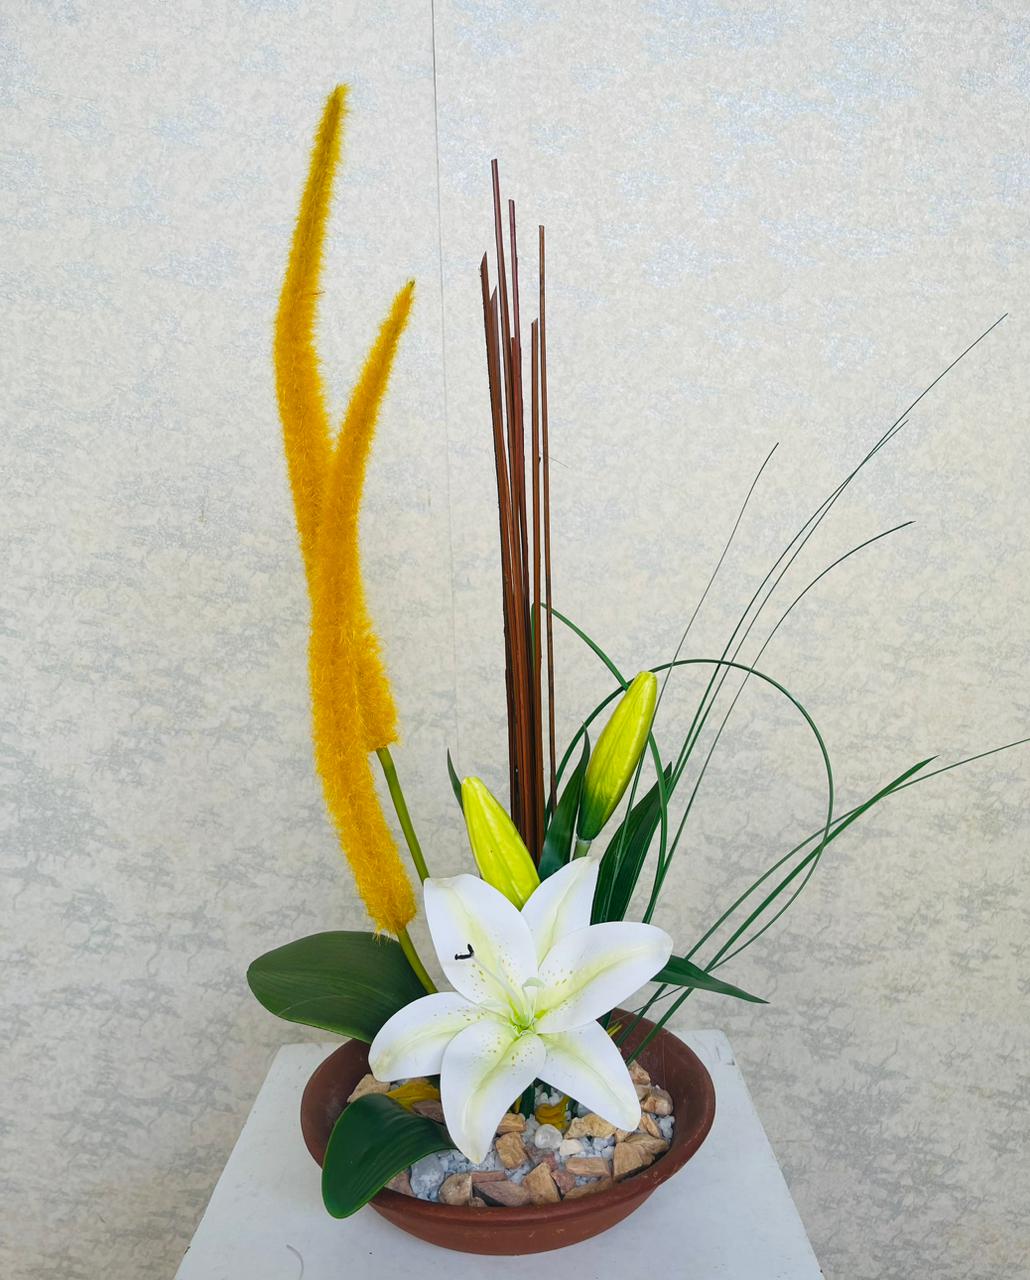 Artificial Floral Arrangement (h:50cm w:30cm)